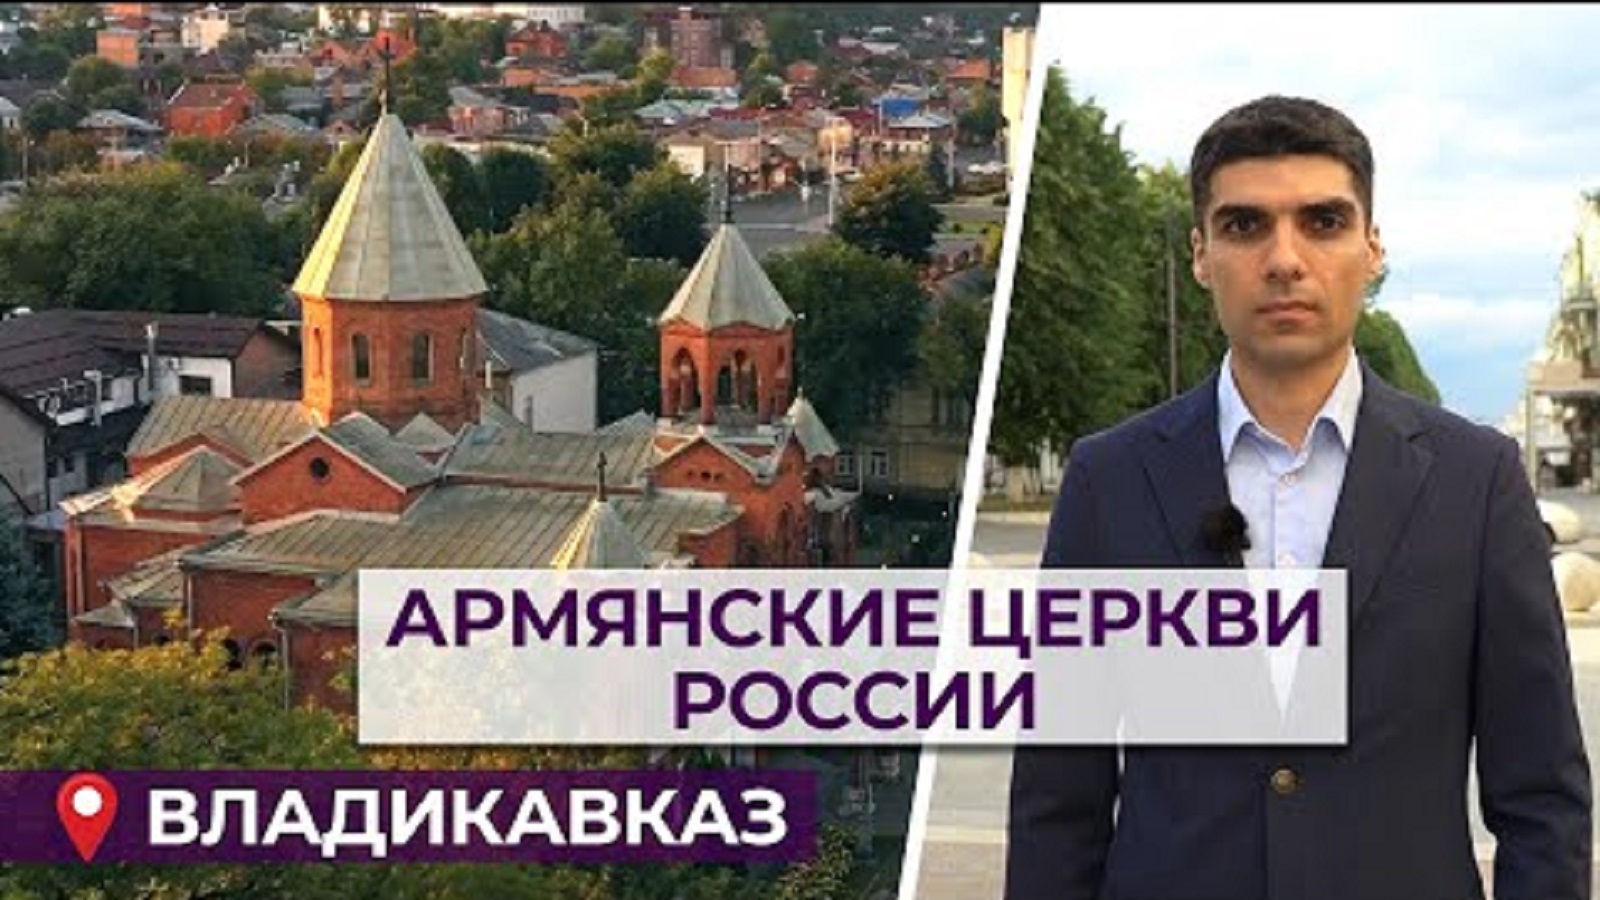 Армянские церкви России/Владикавказ/HAYK media